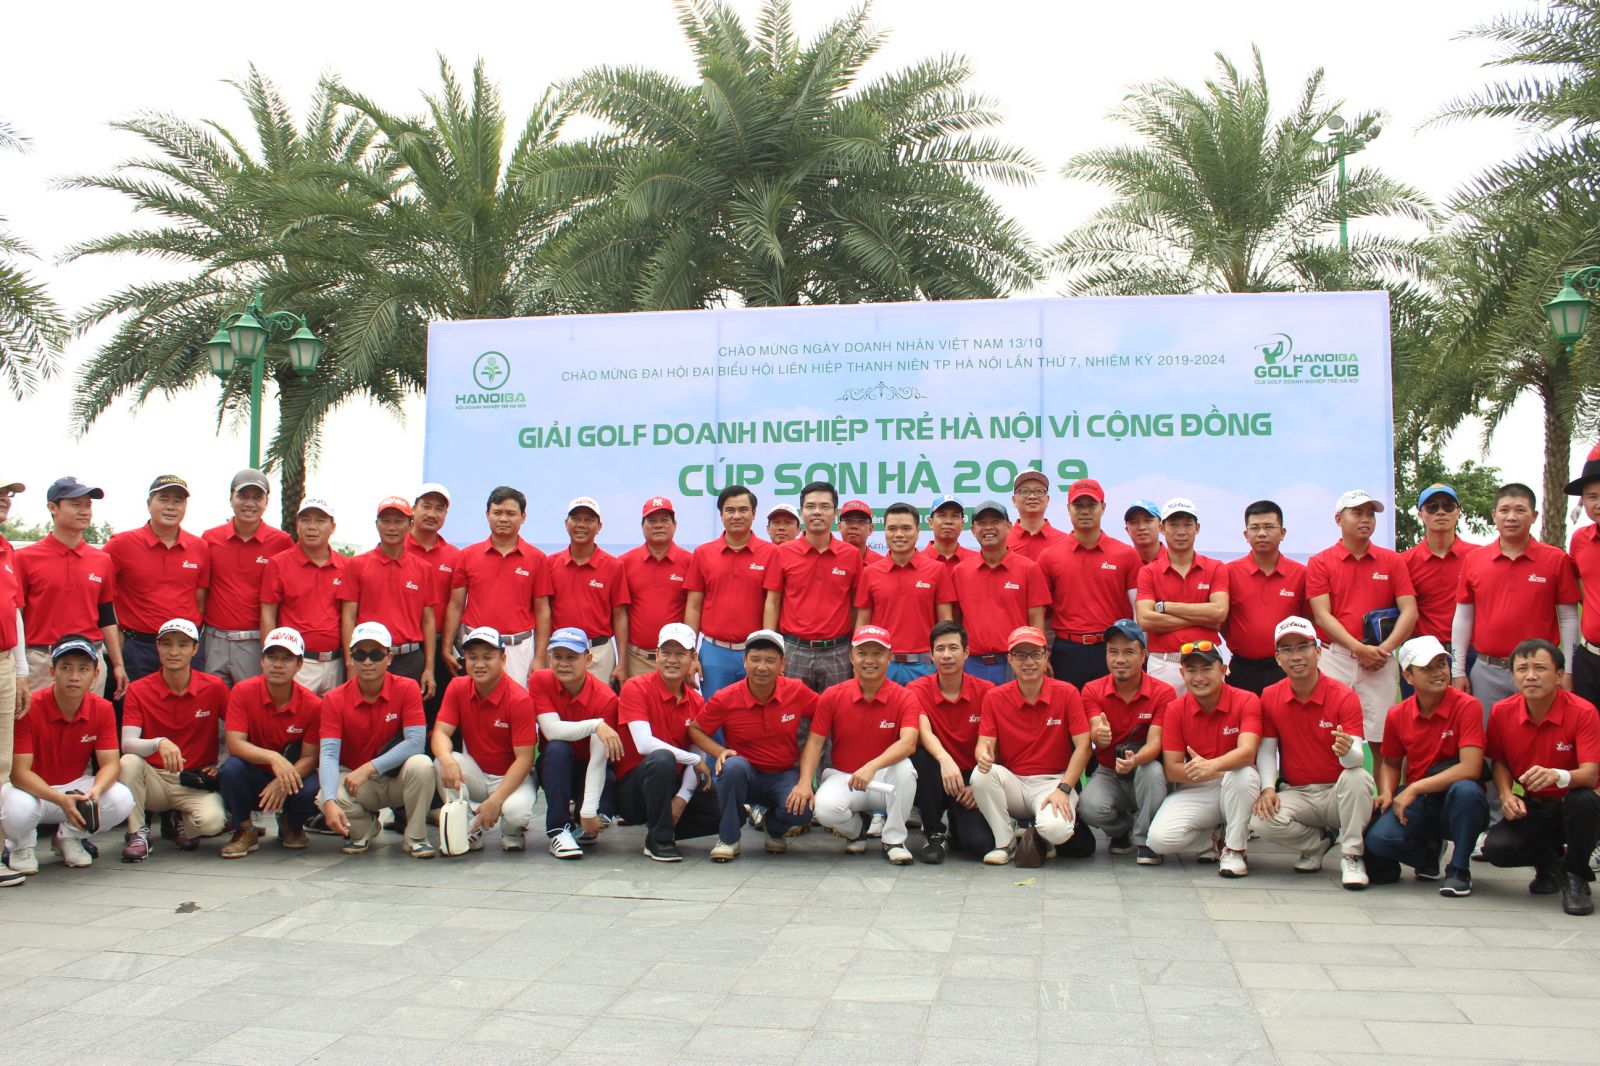 Các doanh nhân tham gia Giải Golf Doanh nghiệp trẻ Hà Nội vì Cộng đồng - Cúp Sơn Hà 2019